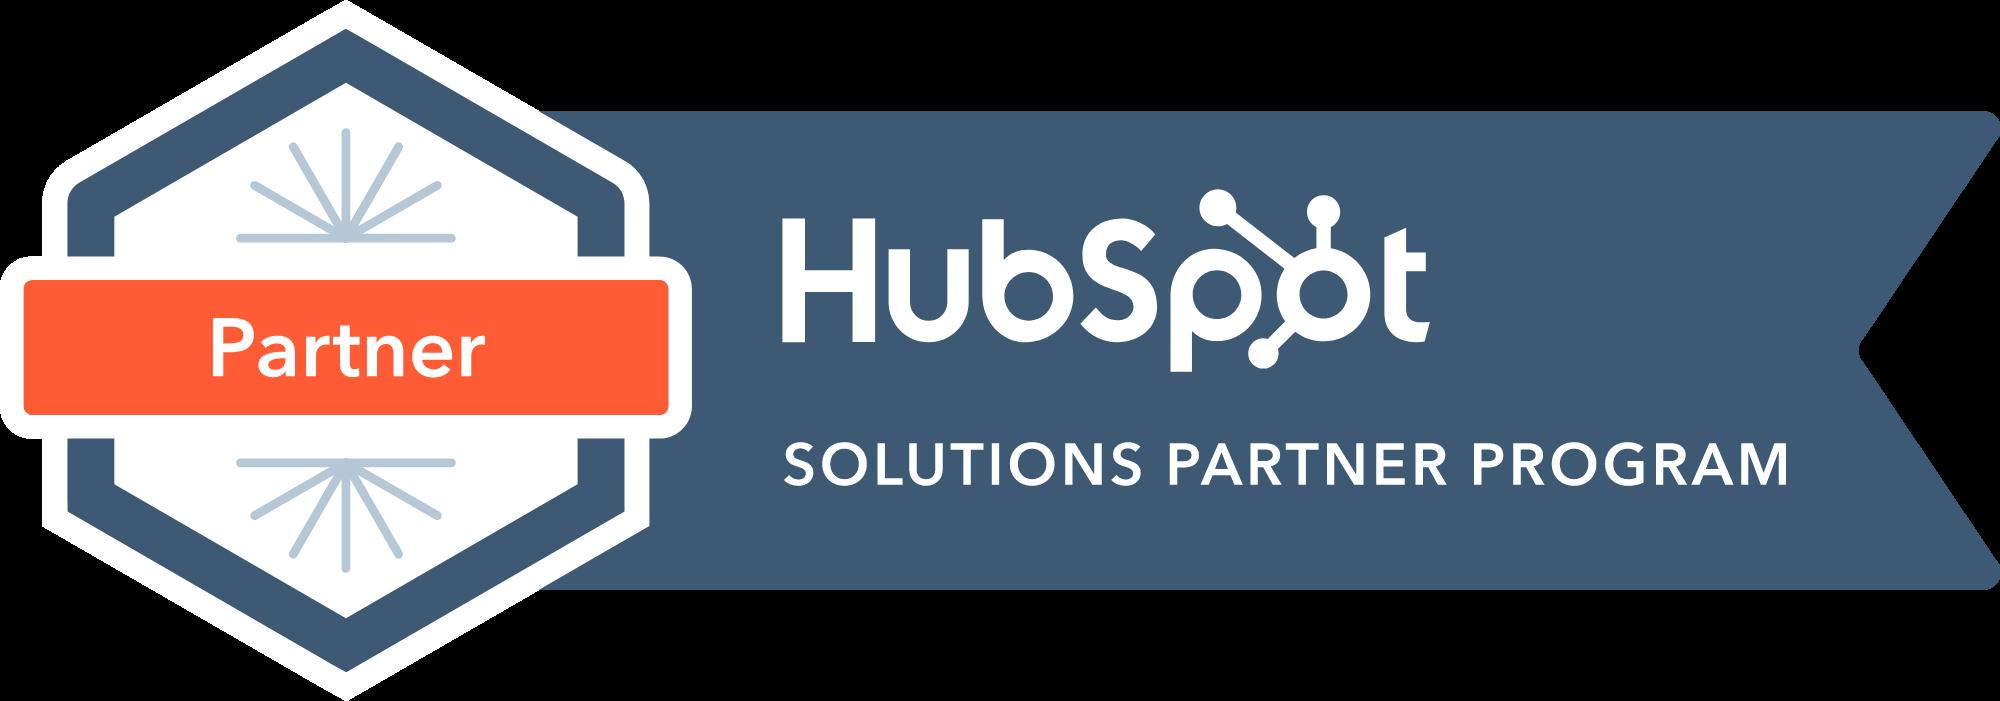 株式会社BizGenix、HubSpot Solutions Partnerプログラムの認定パートナーに